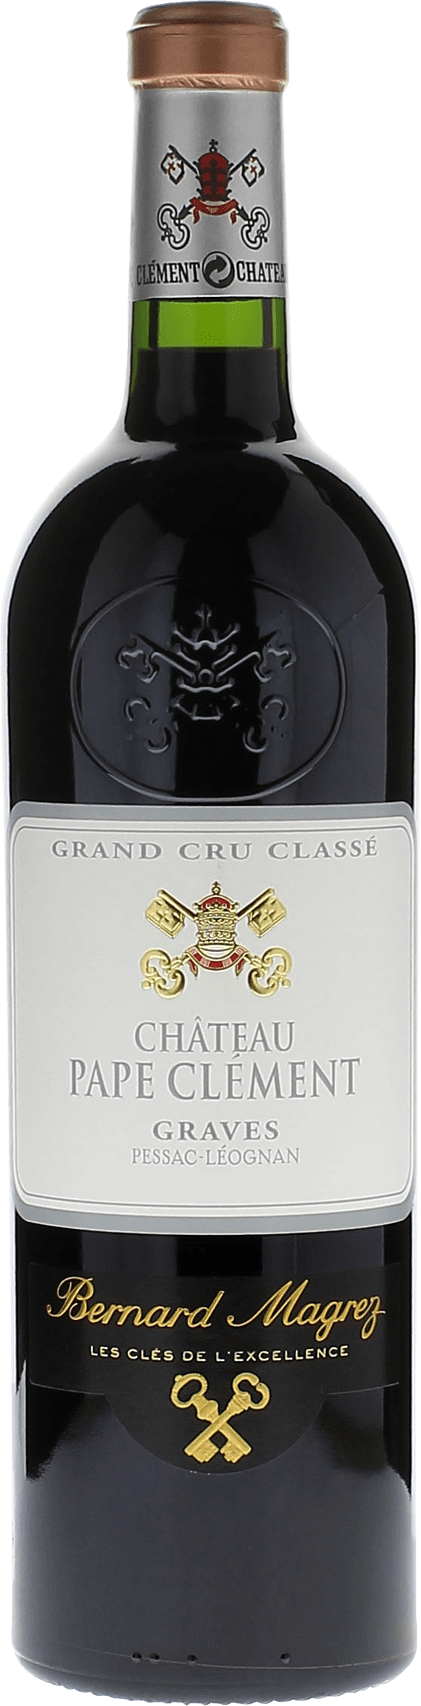 Pape clement rouge 1998 Grand Cru Class Graves, Bordeaux rouge